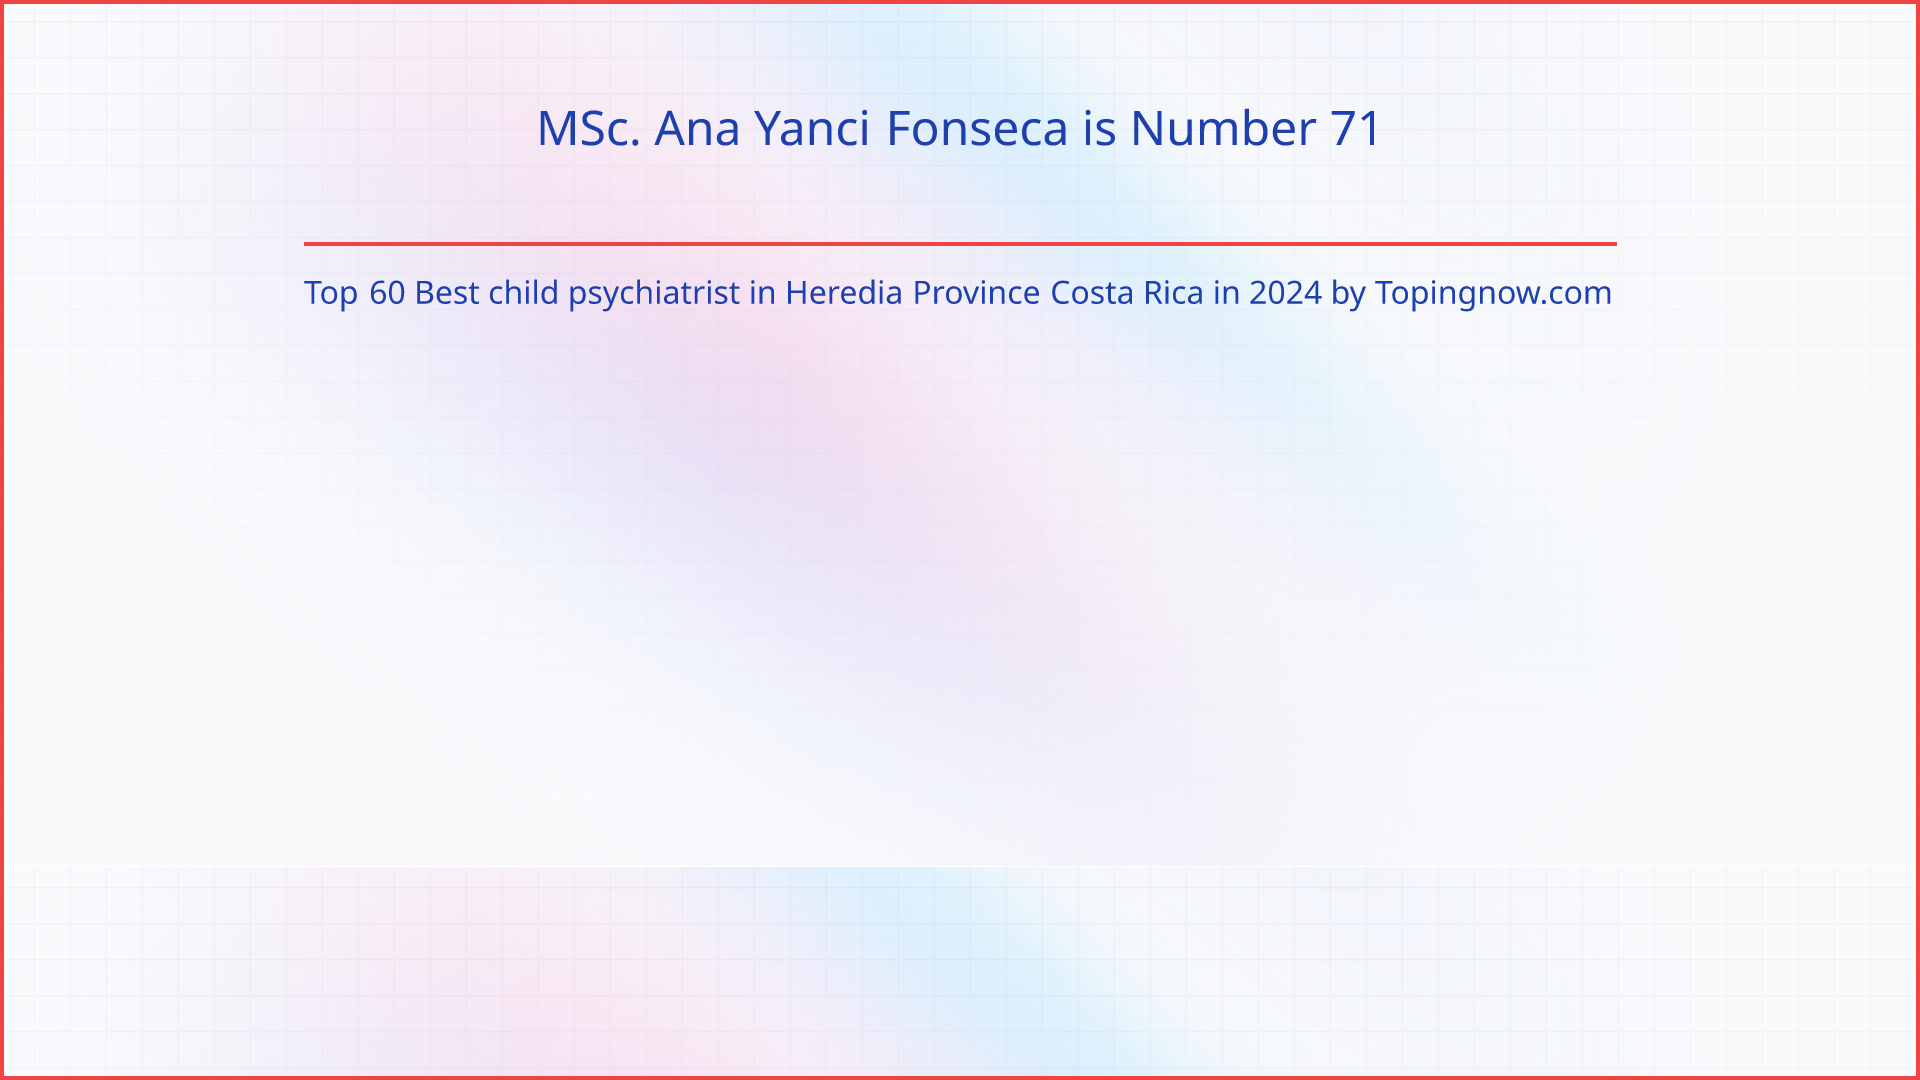 MSc. Ana Yanci Fonseca: Top 60 Best child psychiatrist in Heredia Province Costa Rica in 2024